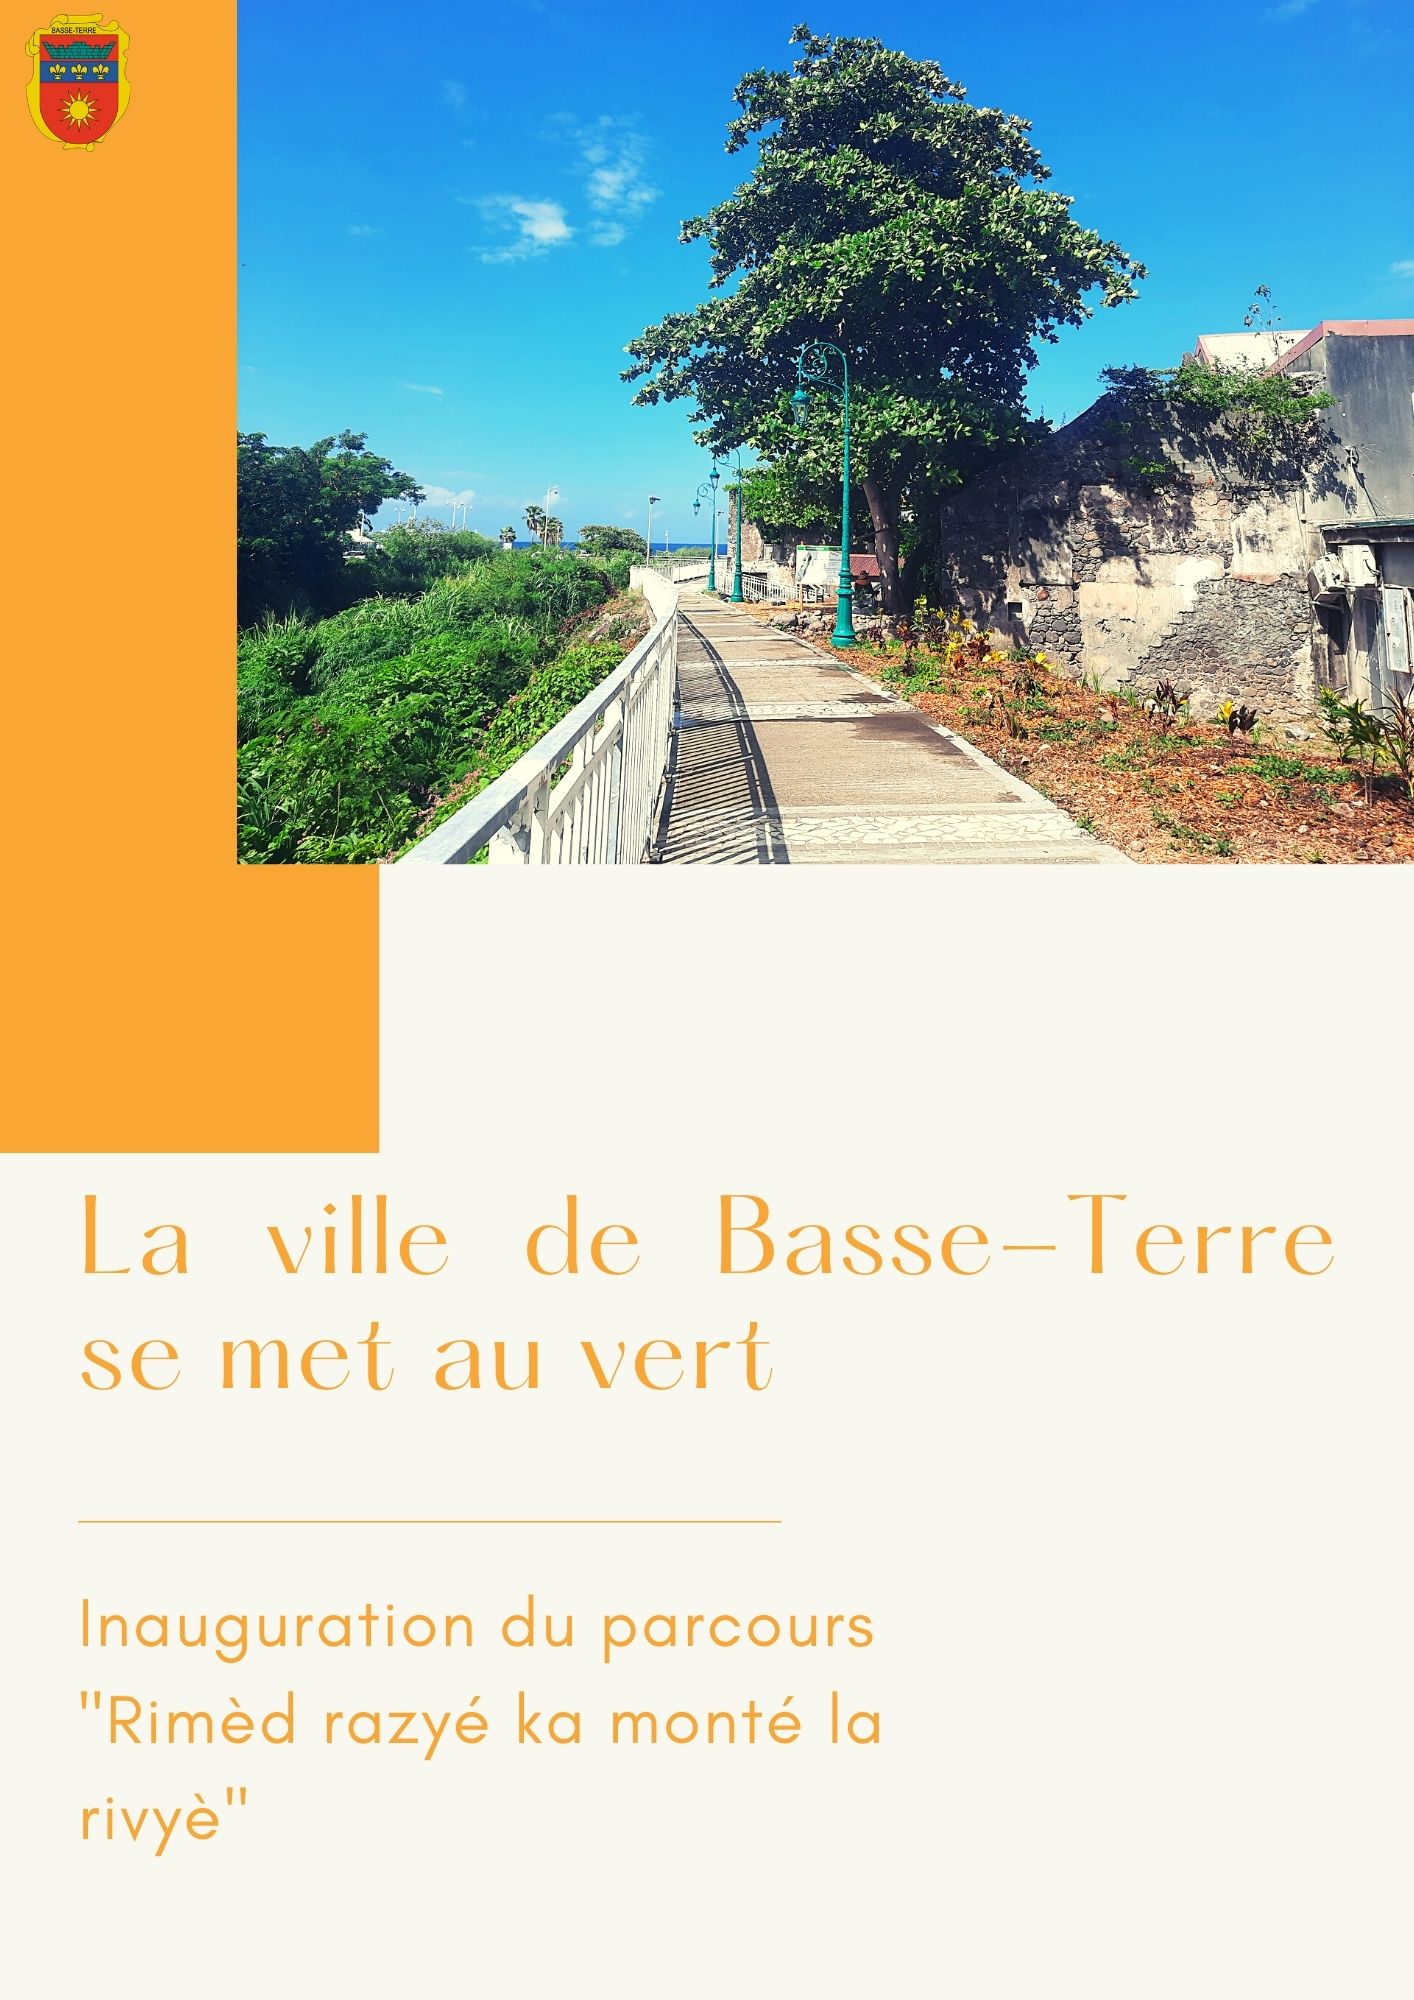 Nos "rimèd razyé" mis à l'honneur au coeur de la ville de Basse-Terre